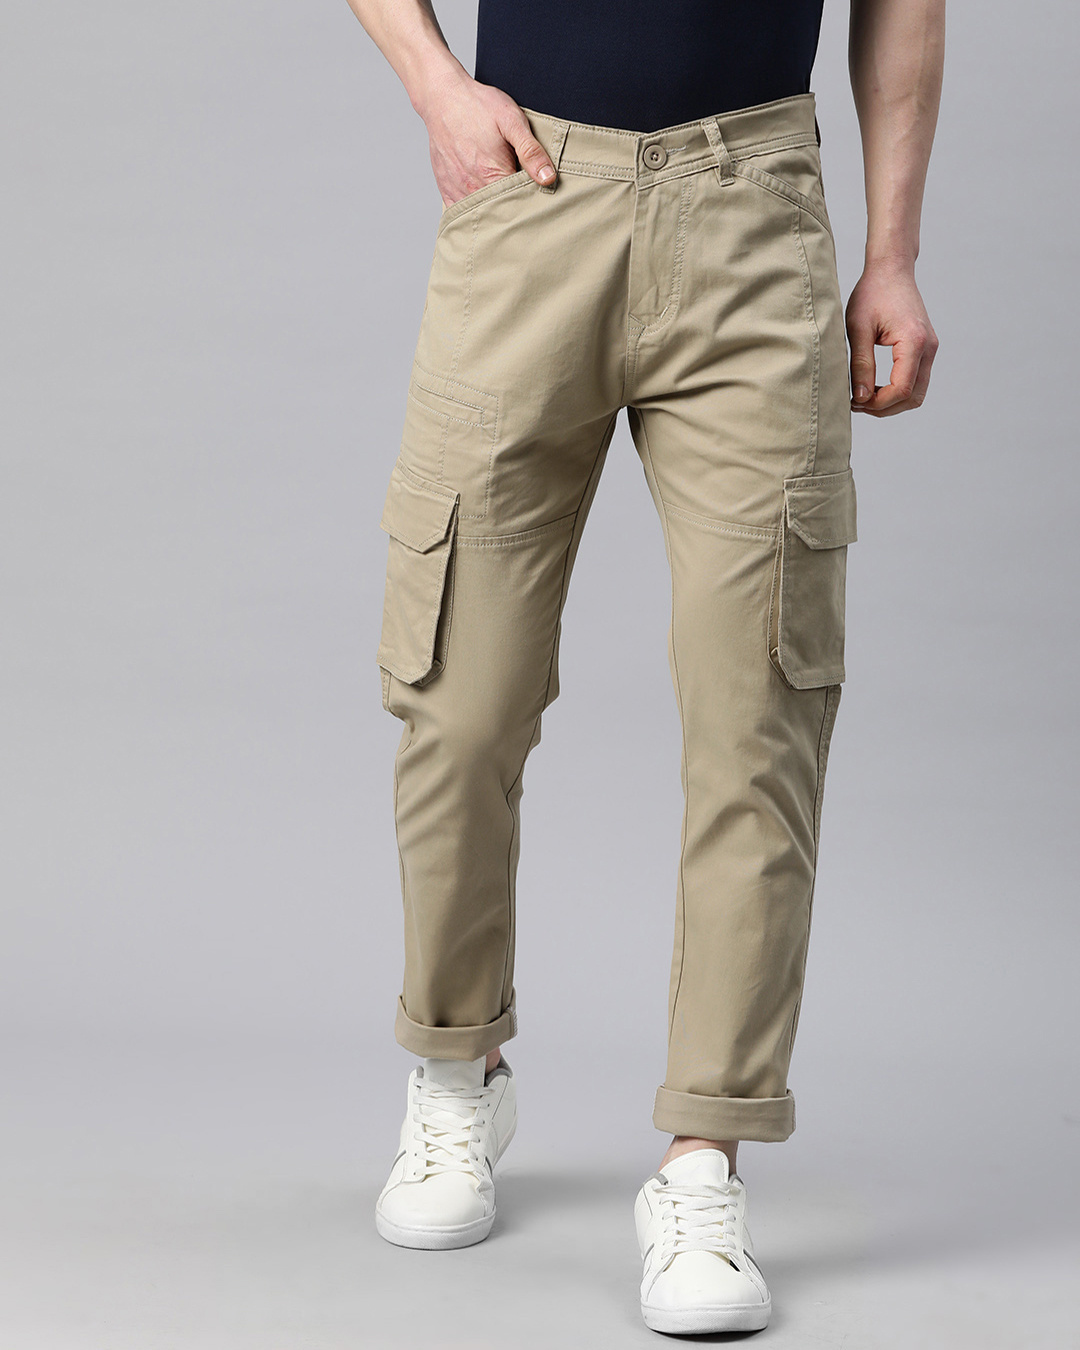 Buy Men's Khaki Slim Fit Cargo Pants Online at Bewakoof